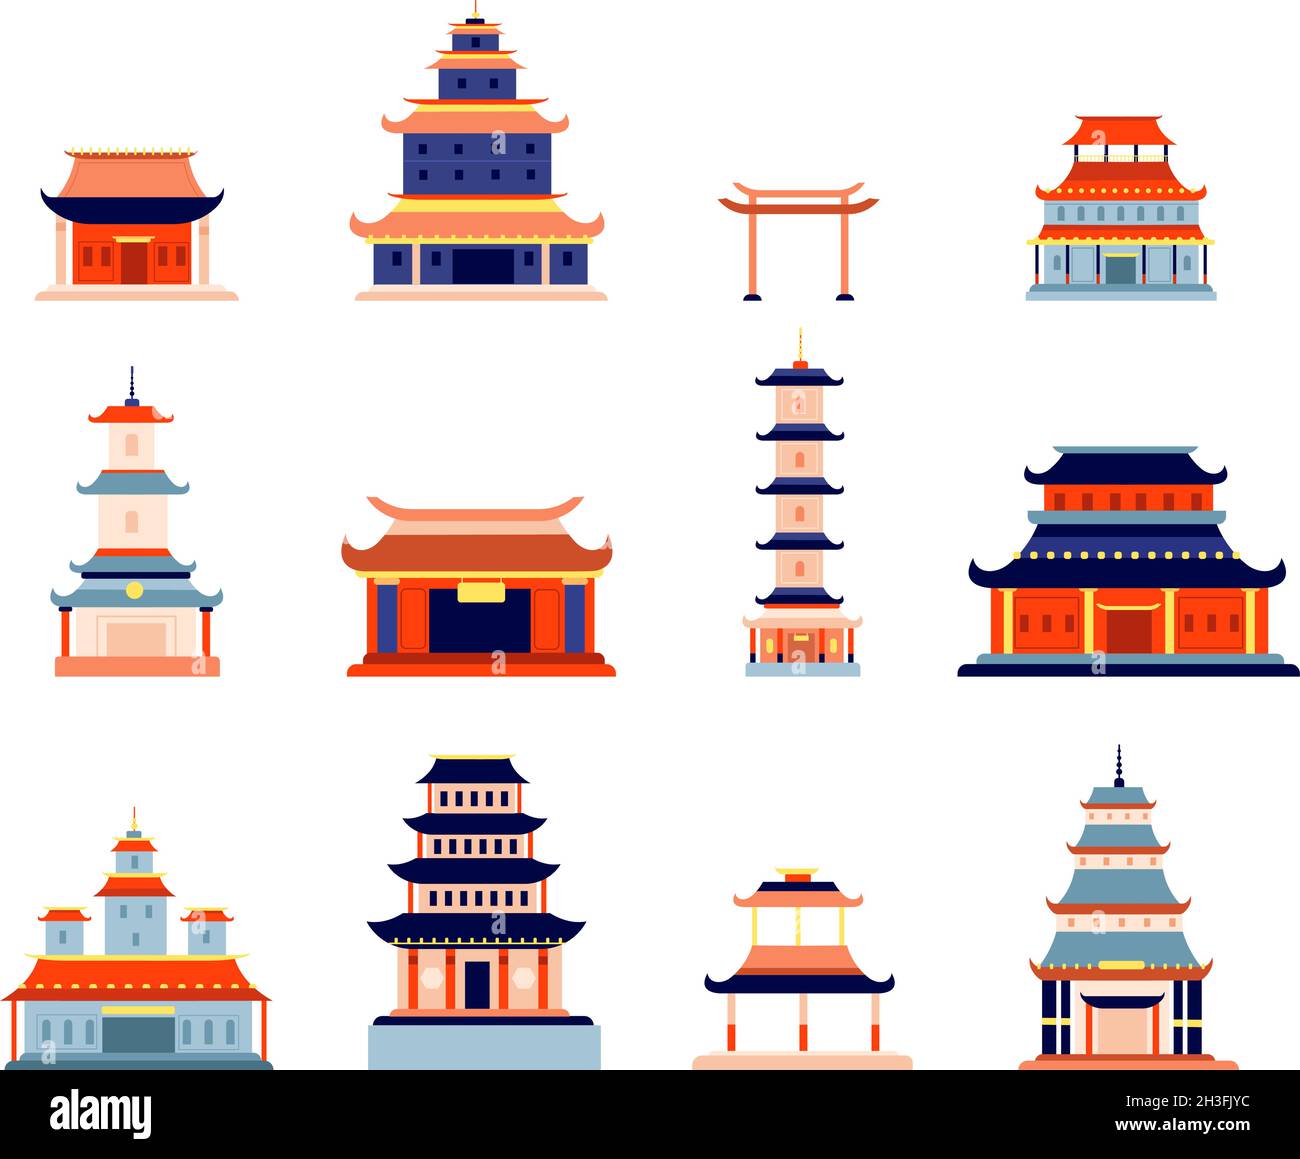 Chinesische Gebäude. China-Stadt, Tempel Kultur Symbol Design. Asiatische Architektur, alte Pagode, flaches japanisches oder koreanisches Haus-Utter-Vektor-Set Stock Vektor